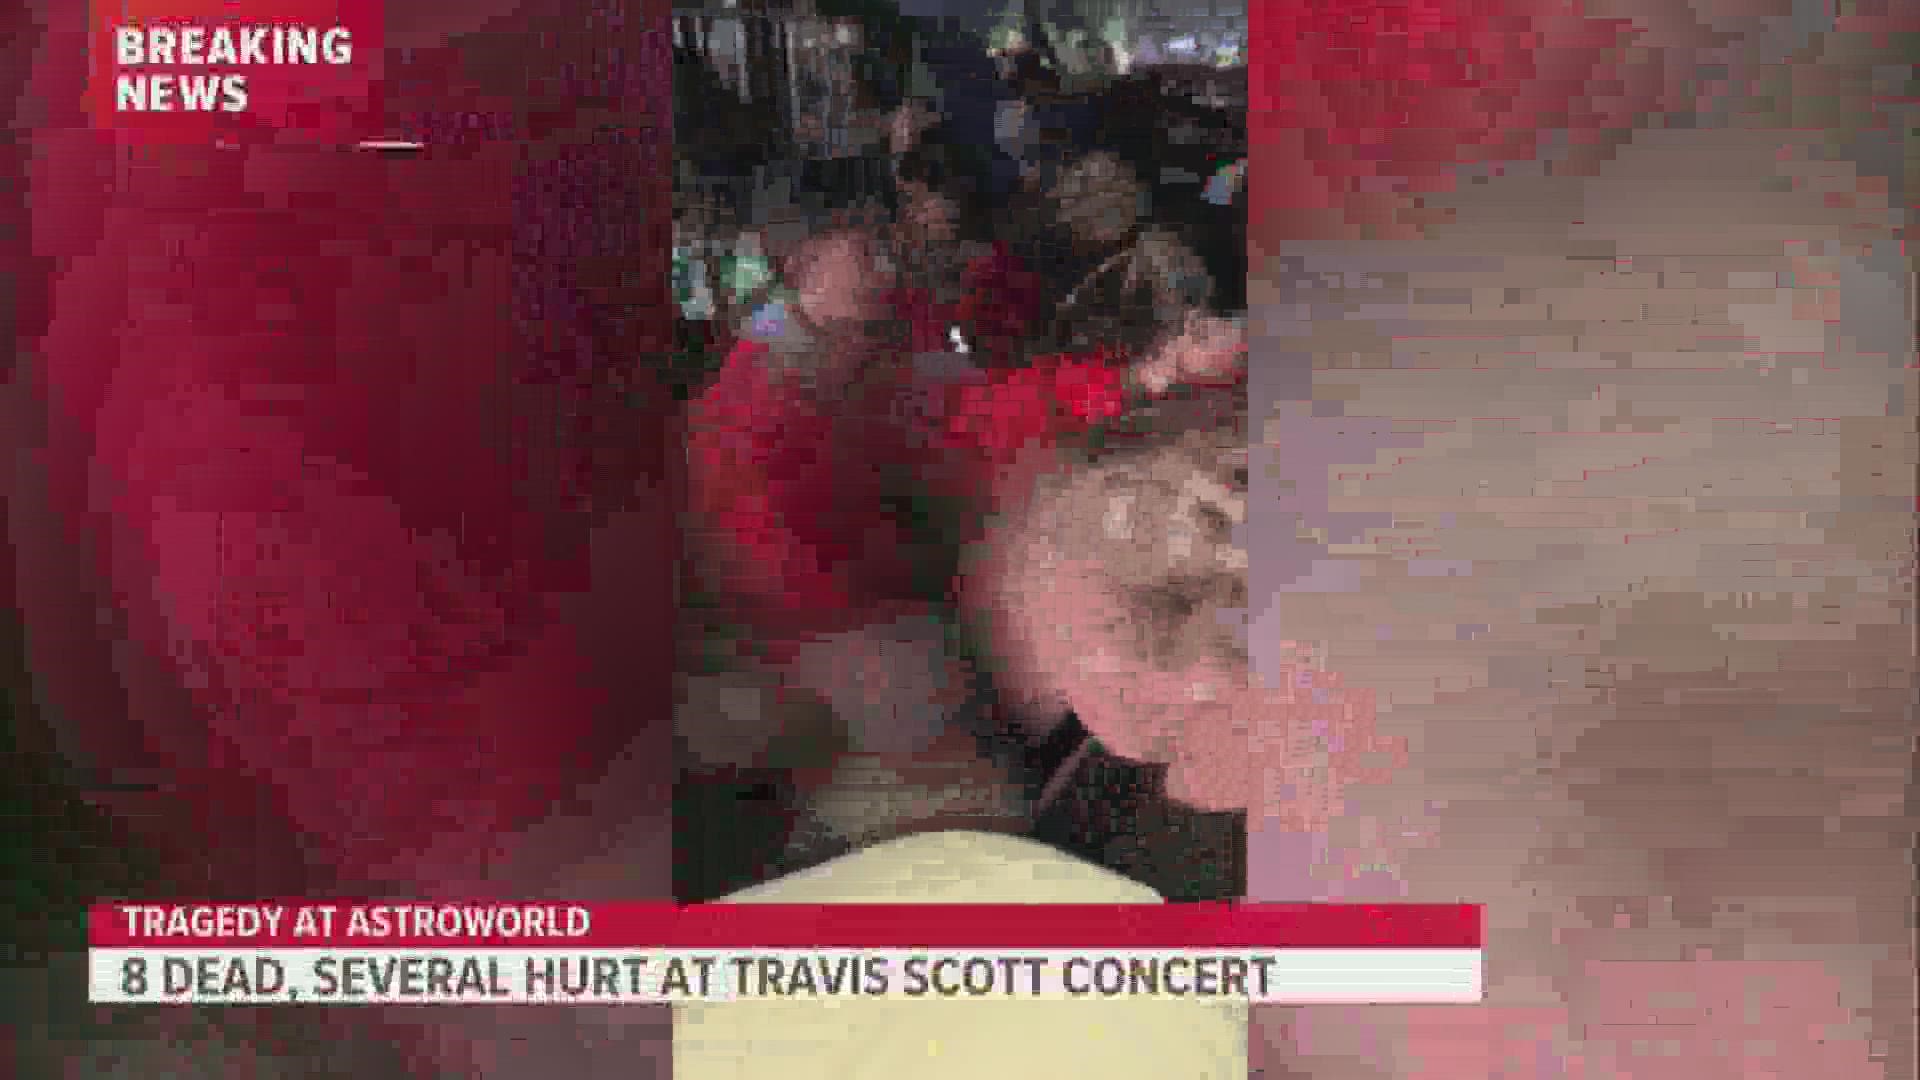 Travis scott concert tragedy